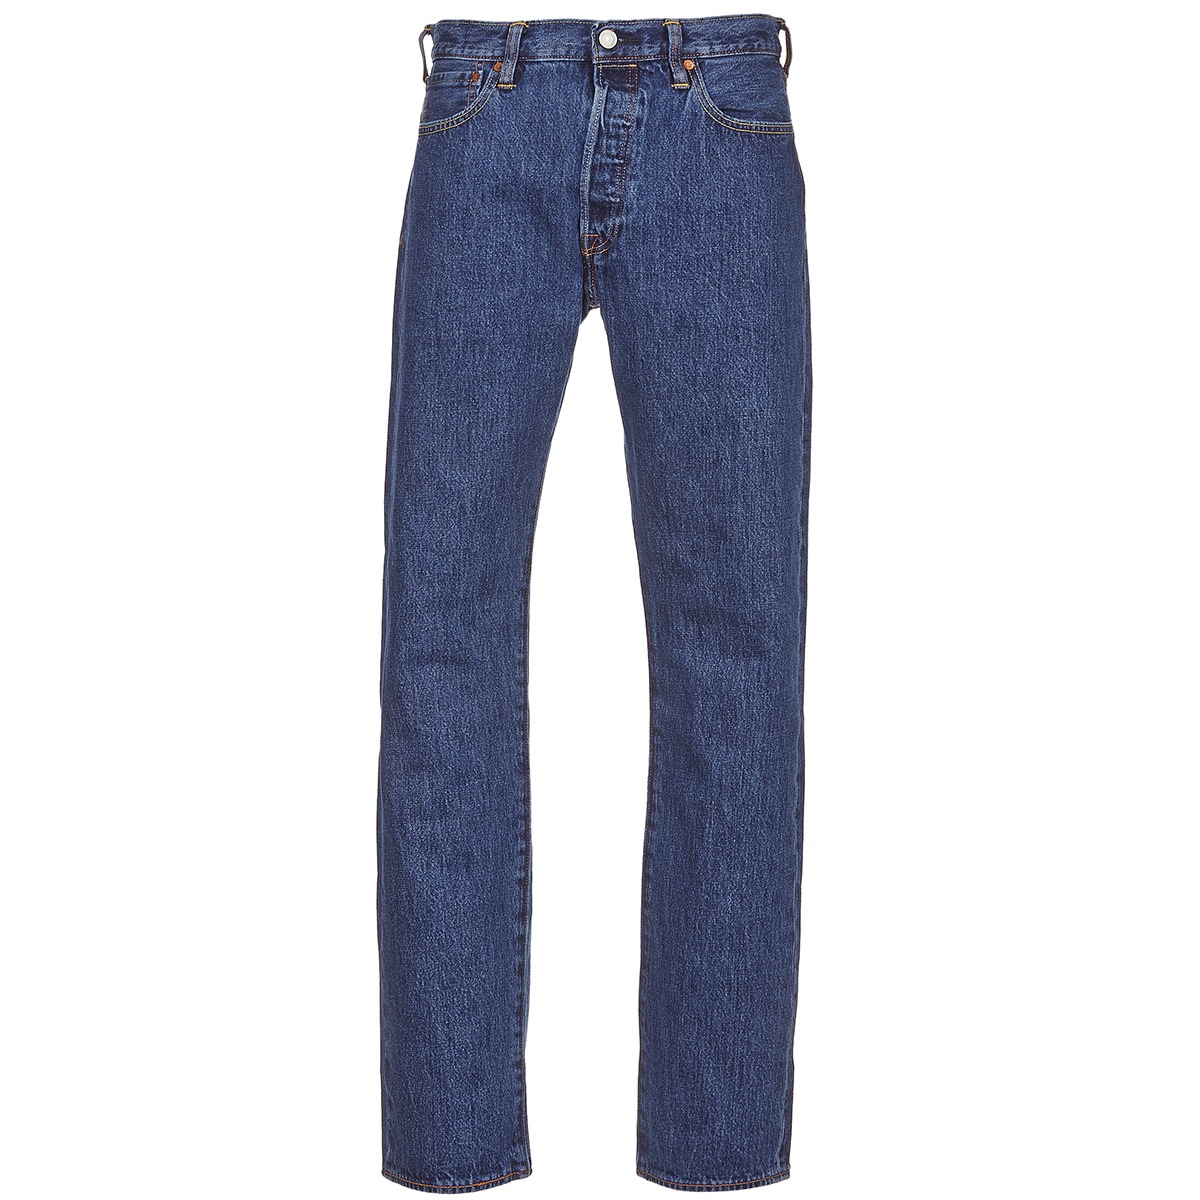 Levi's - 501 Jeans Original Fit Blue 0114 - W 33 - L 32 - Regular-fit